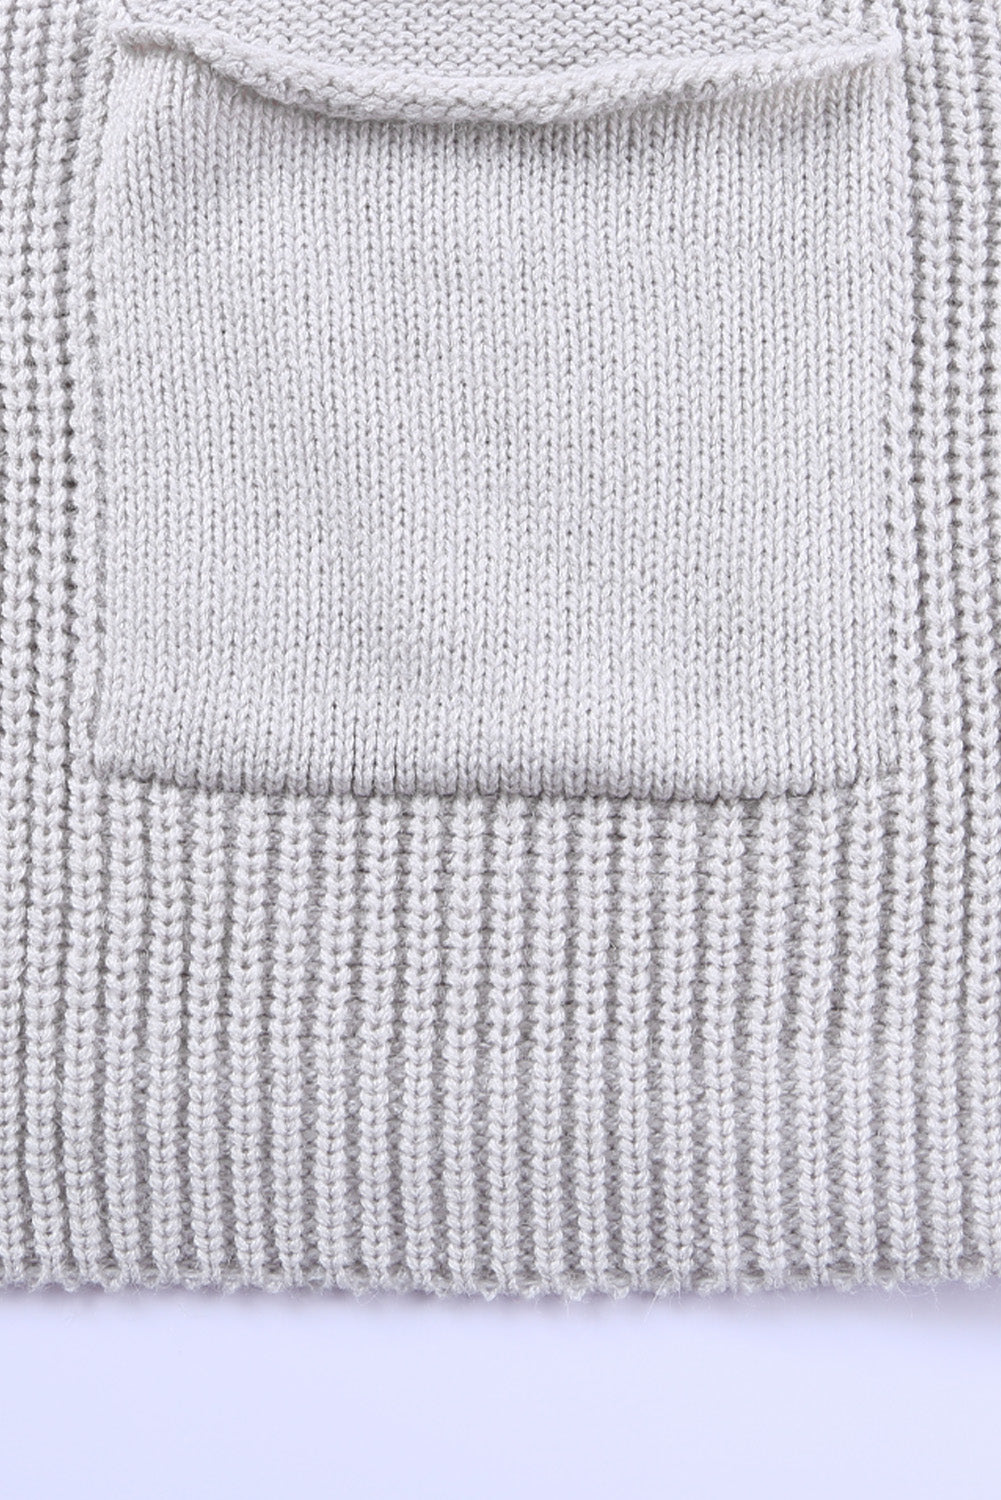 Khaki Batwing Sleeve Pocket Oversized Cable Knit Cardigan